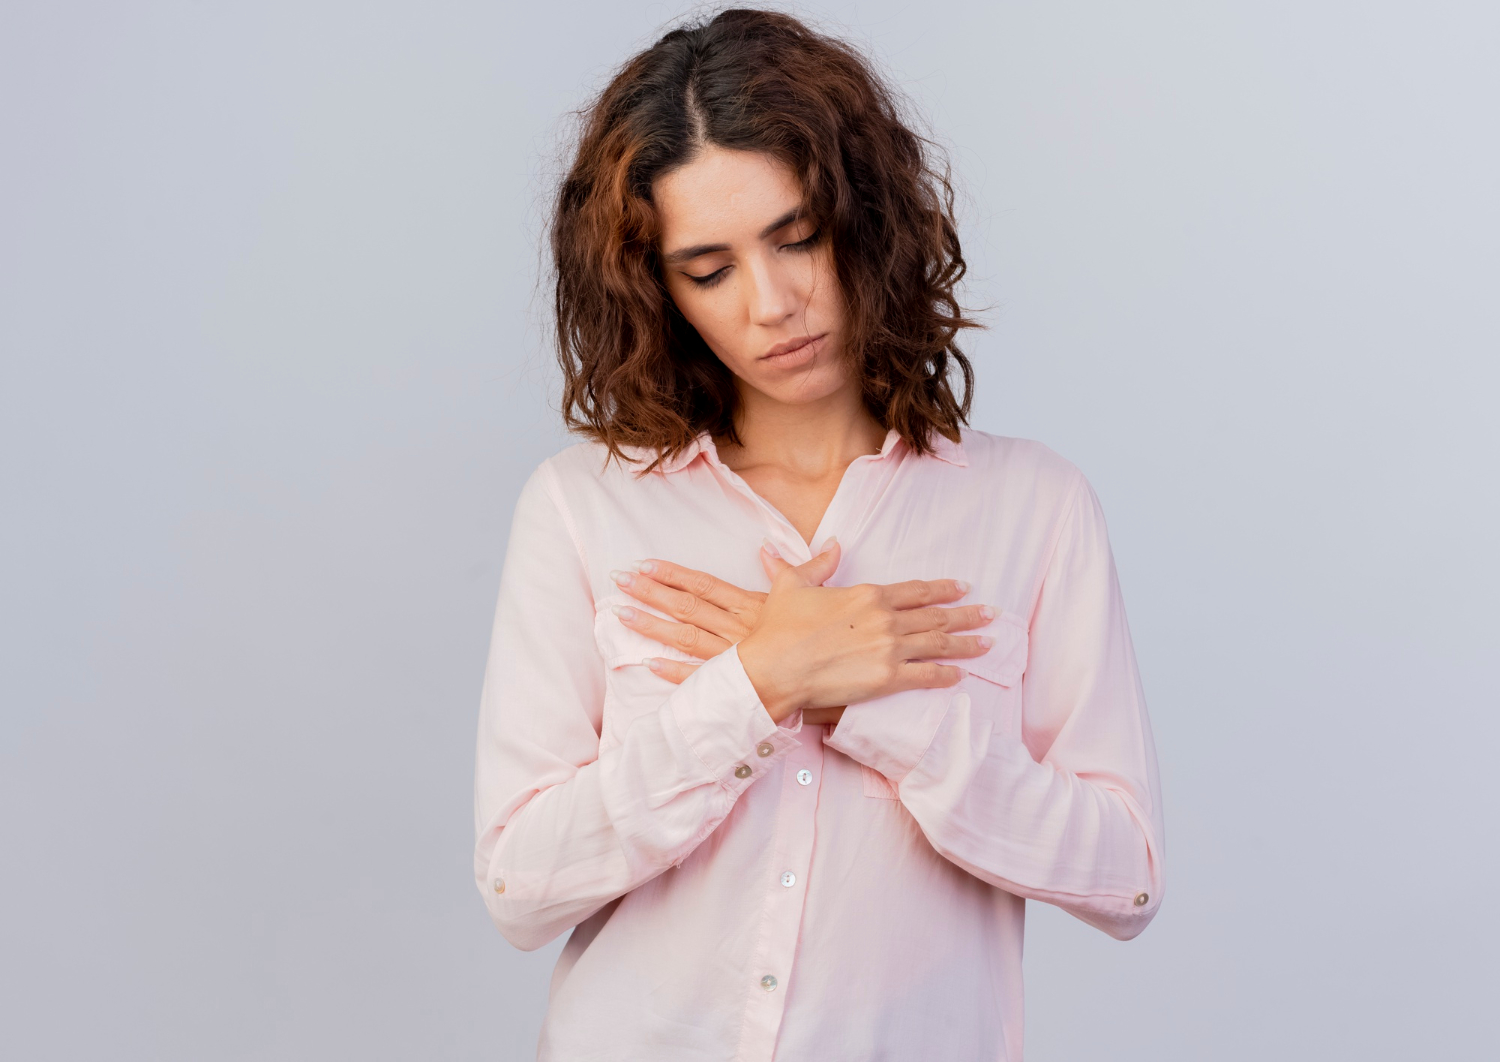 الفرق بين ألم الثدي قبل الدورة والحمل